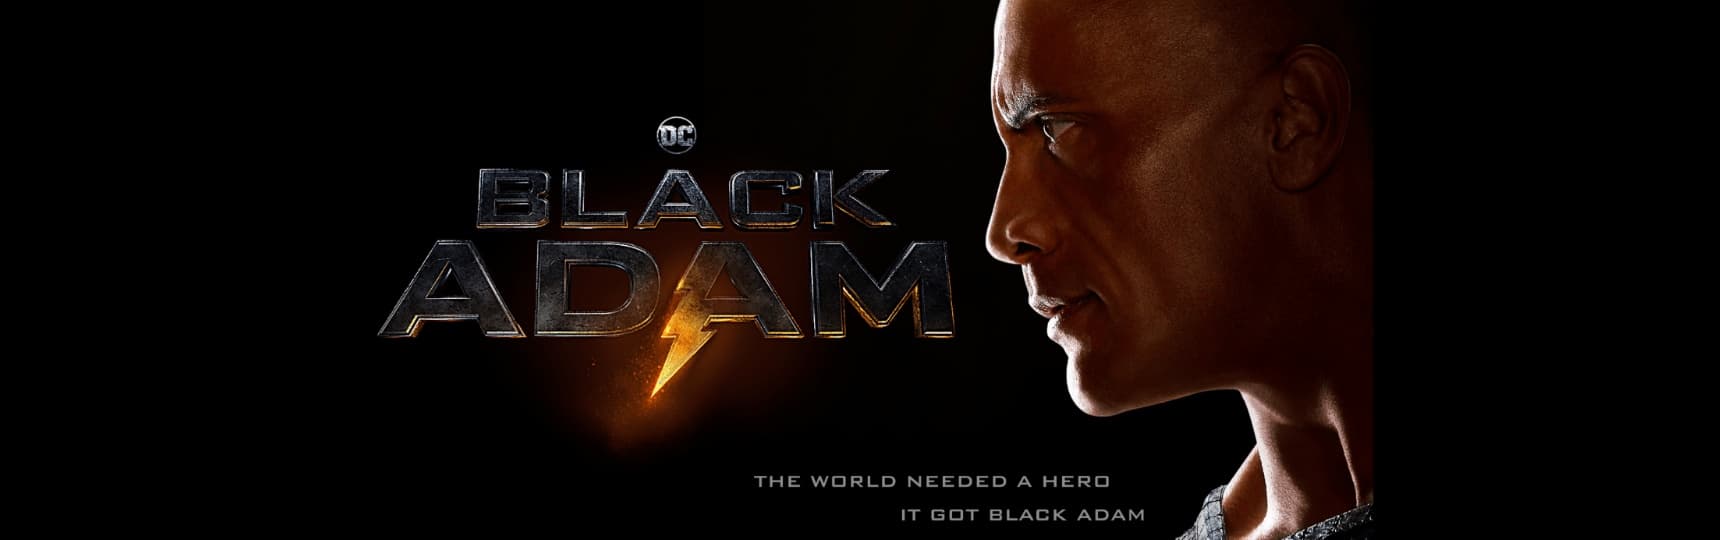 FILM Black Adam